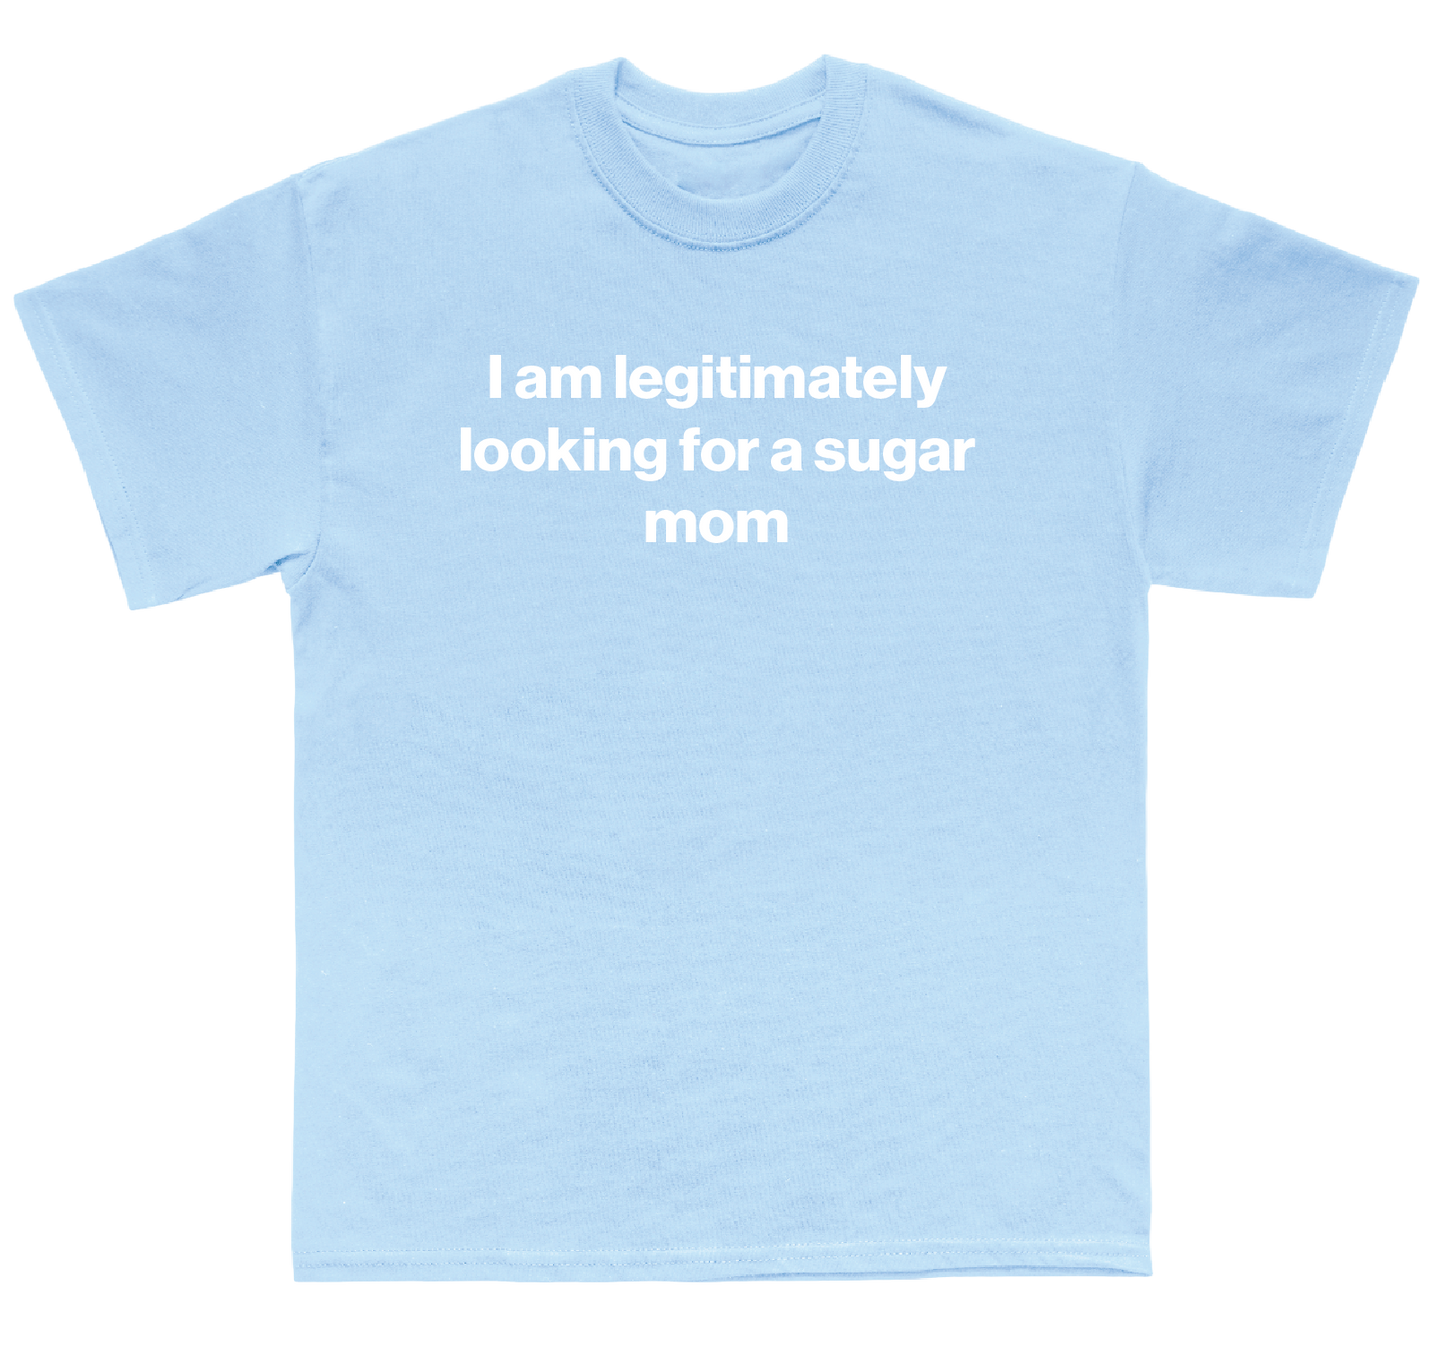 I am legitimately looking for a sugar mom shirt